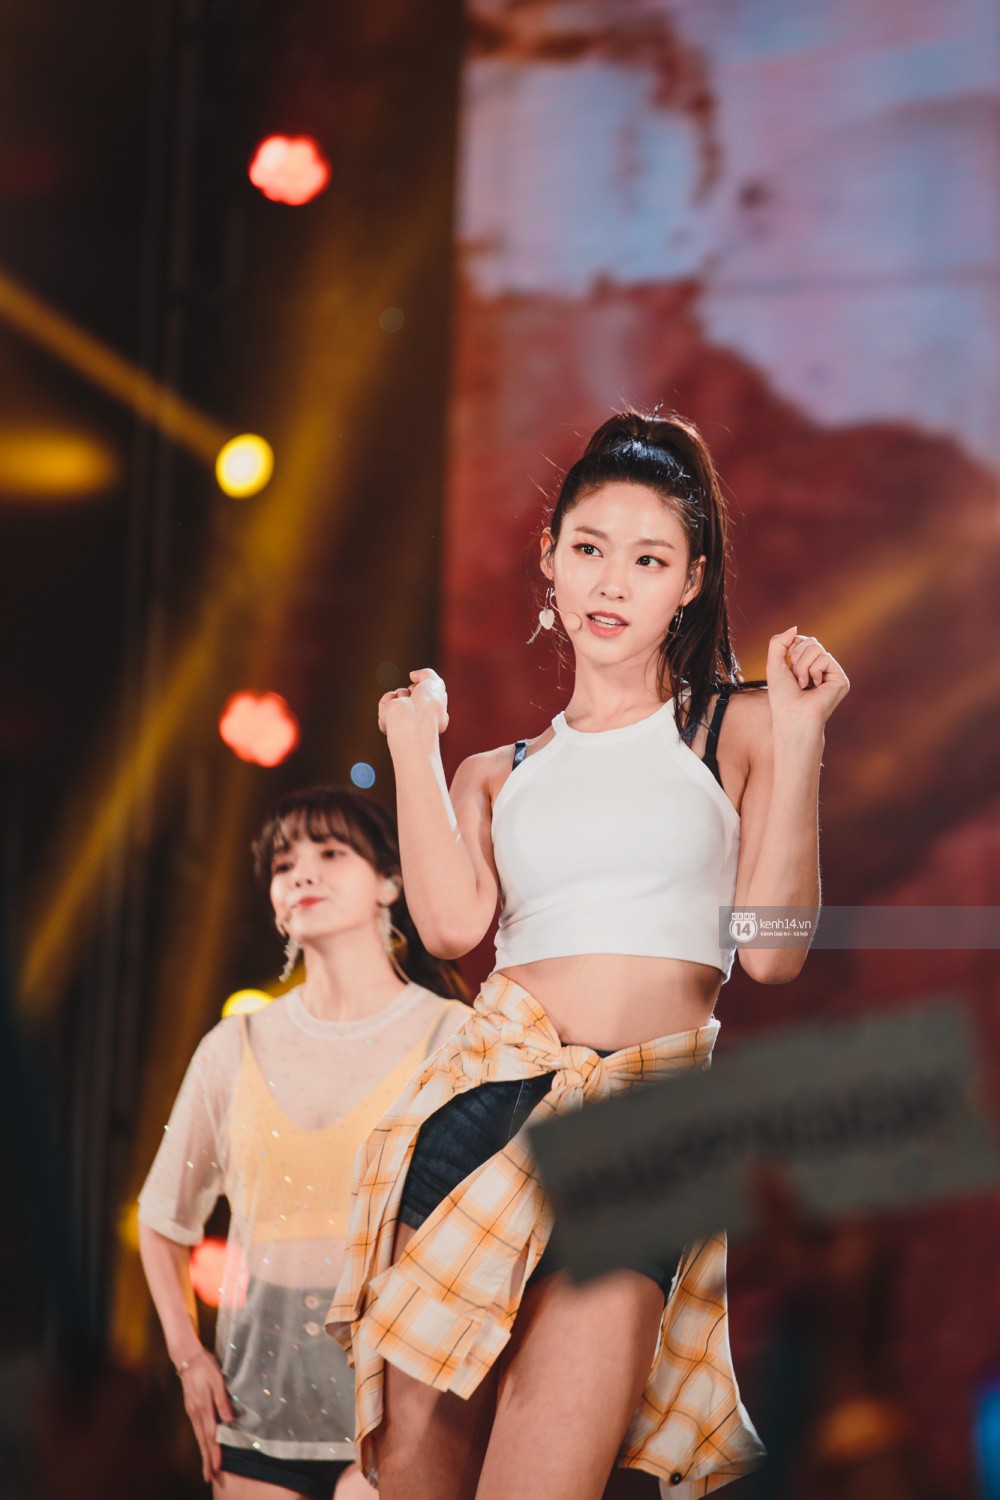 Khoảnh khắc đẹp của dàn sao Việt-Hàn trong show diễn đêm qua khiến khán giả bùng nổ - Ảnh 37.